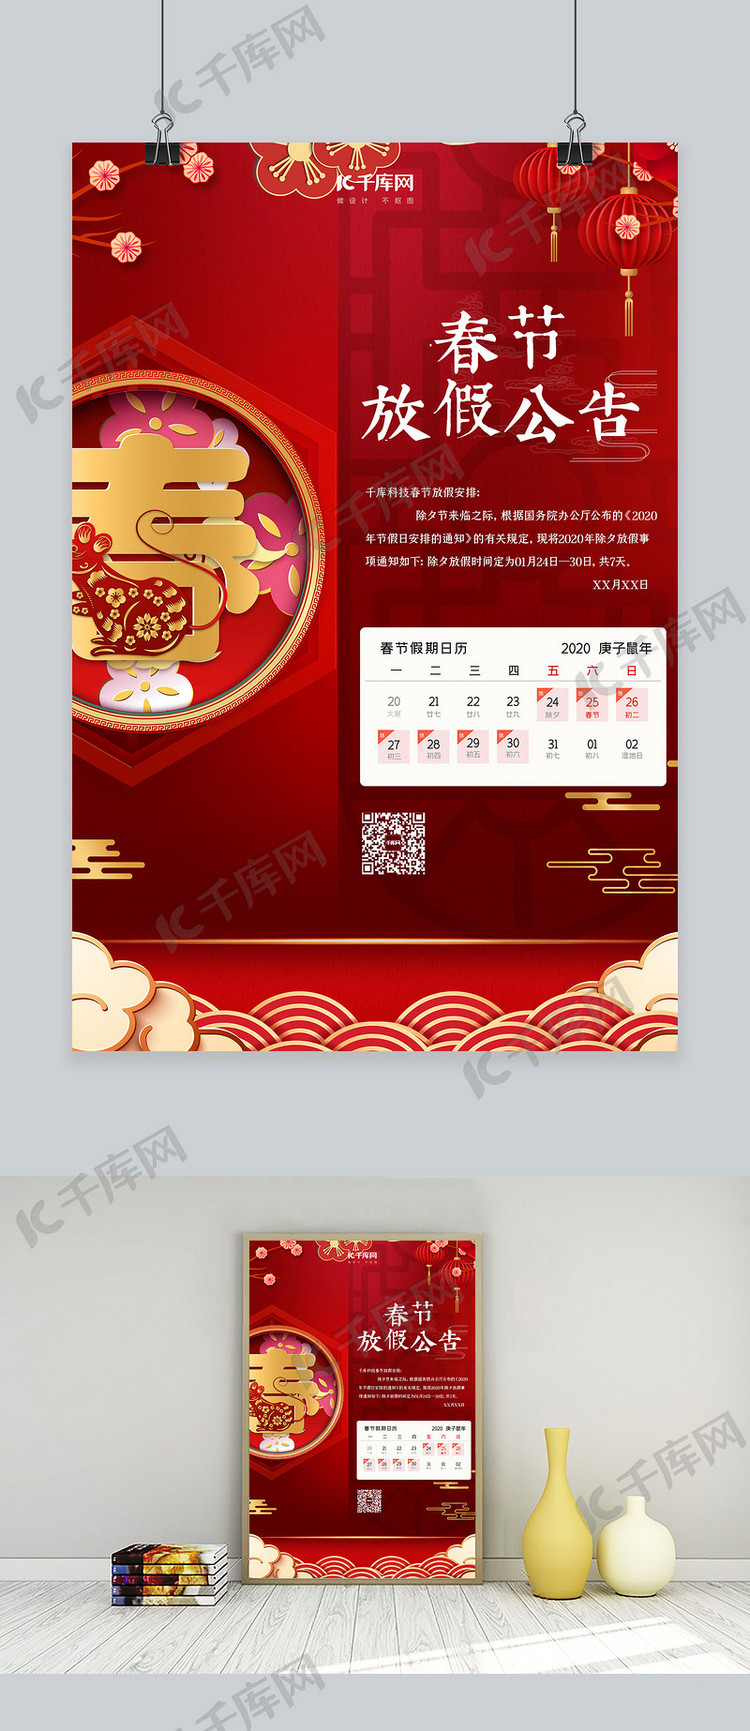 春节放假通知春中国红中国风海报